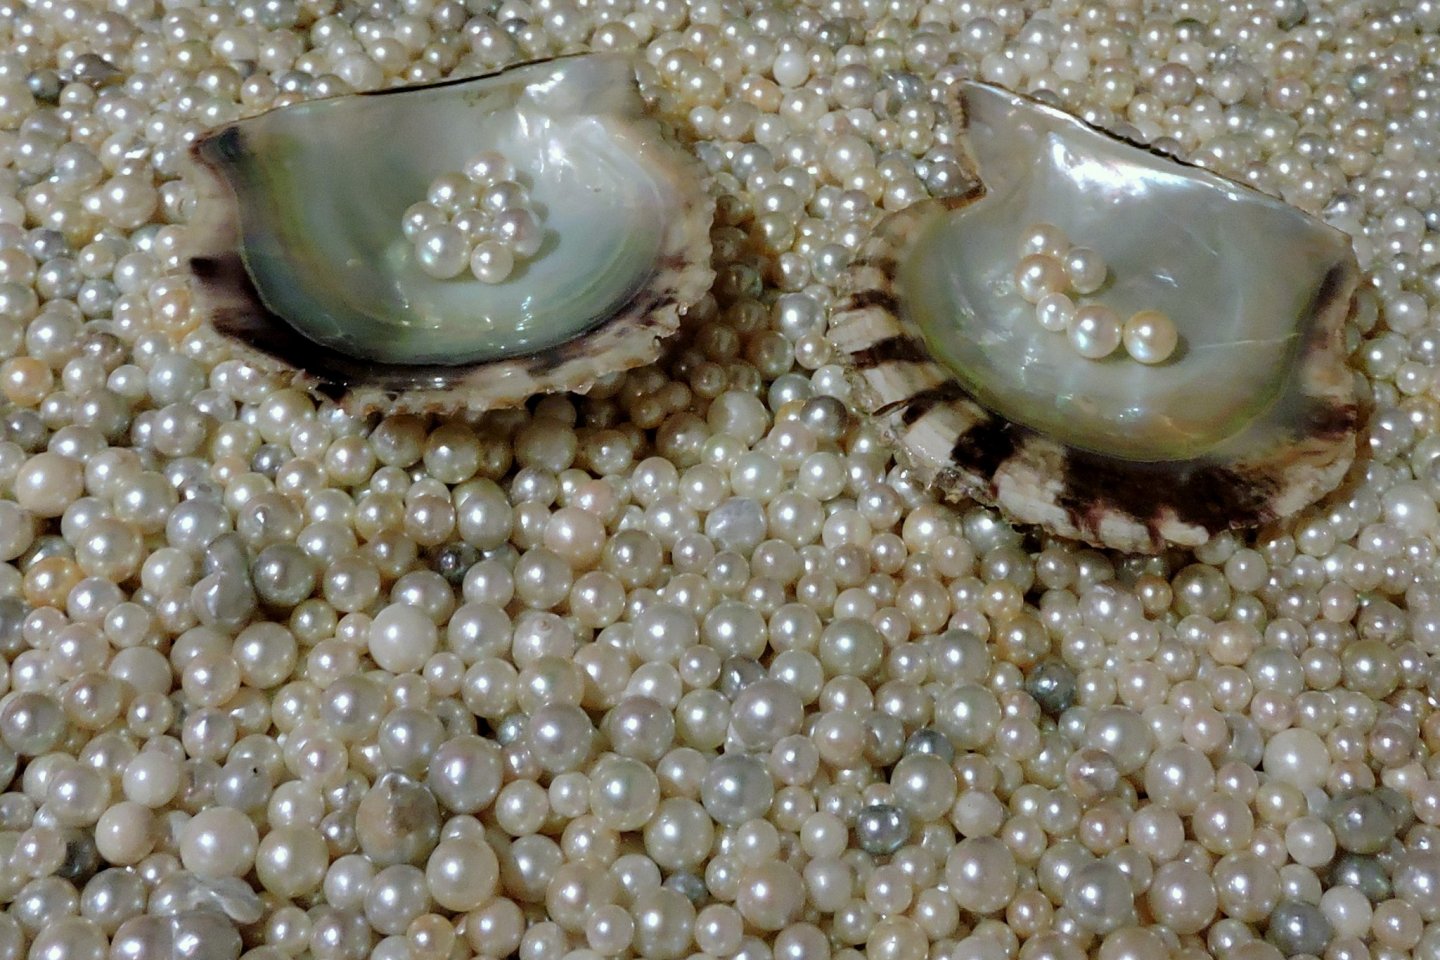 Precious sea gems!